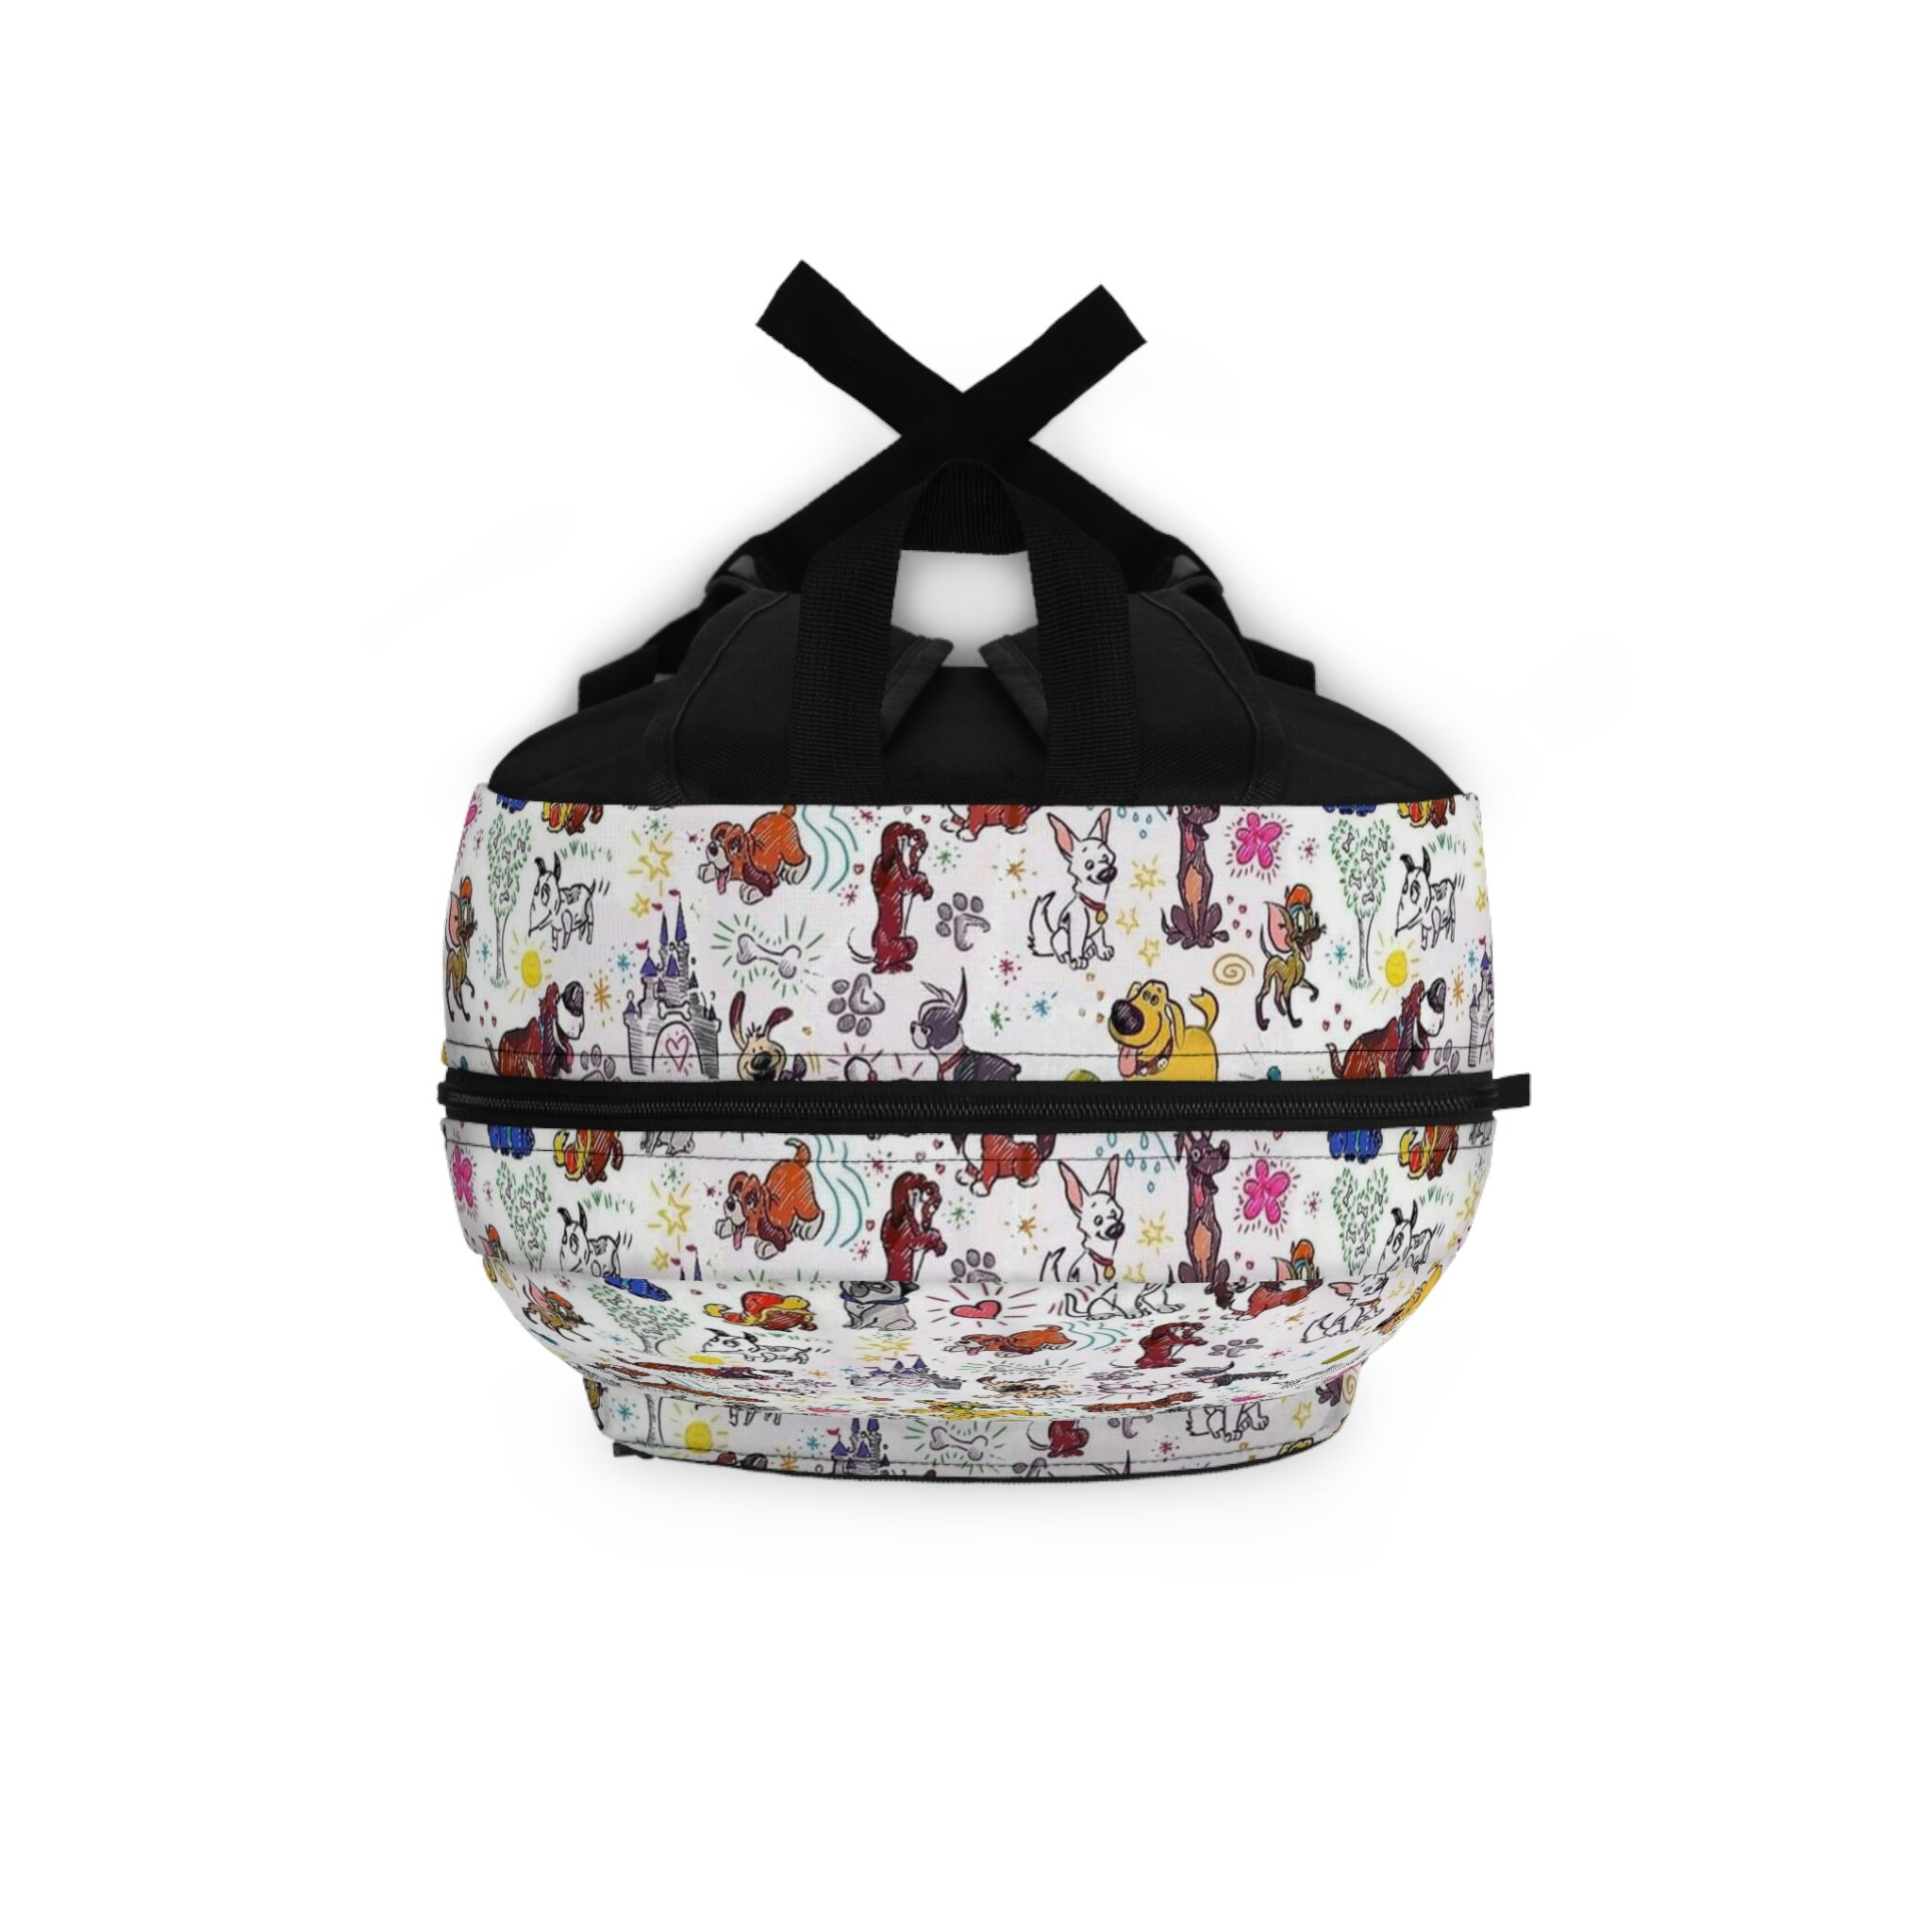 Disney Dog Doodles - Disney Trip Bag - Disney Bookbag - Backpack